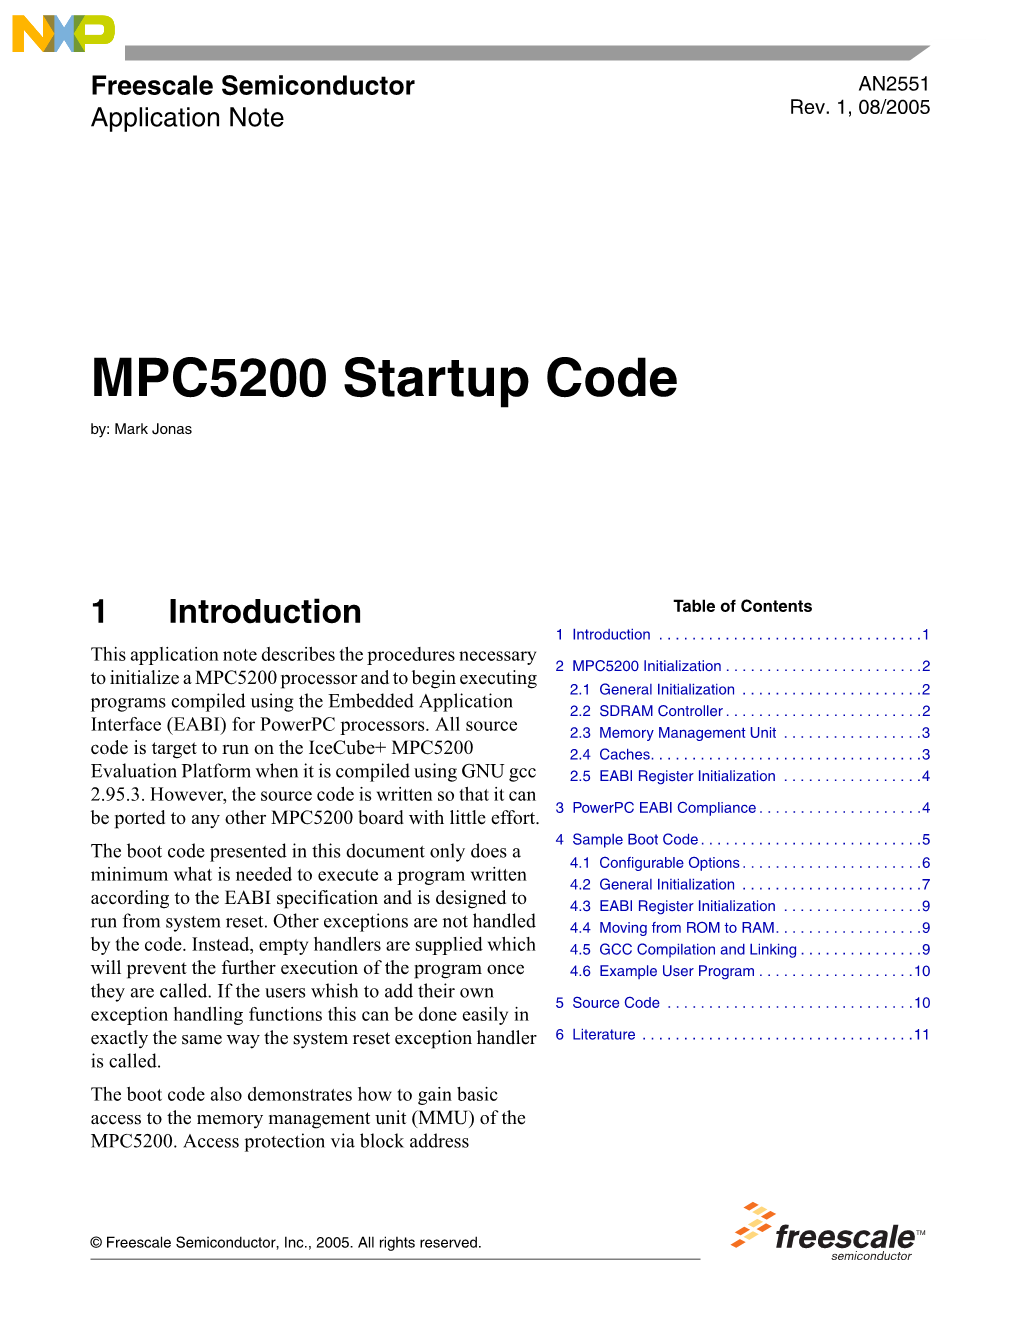 AN2551, MPC5200 Startup Code